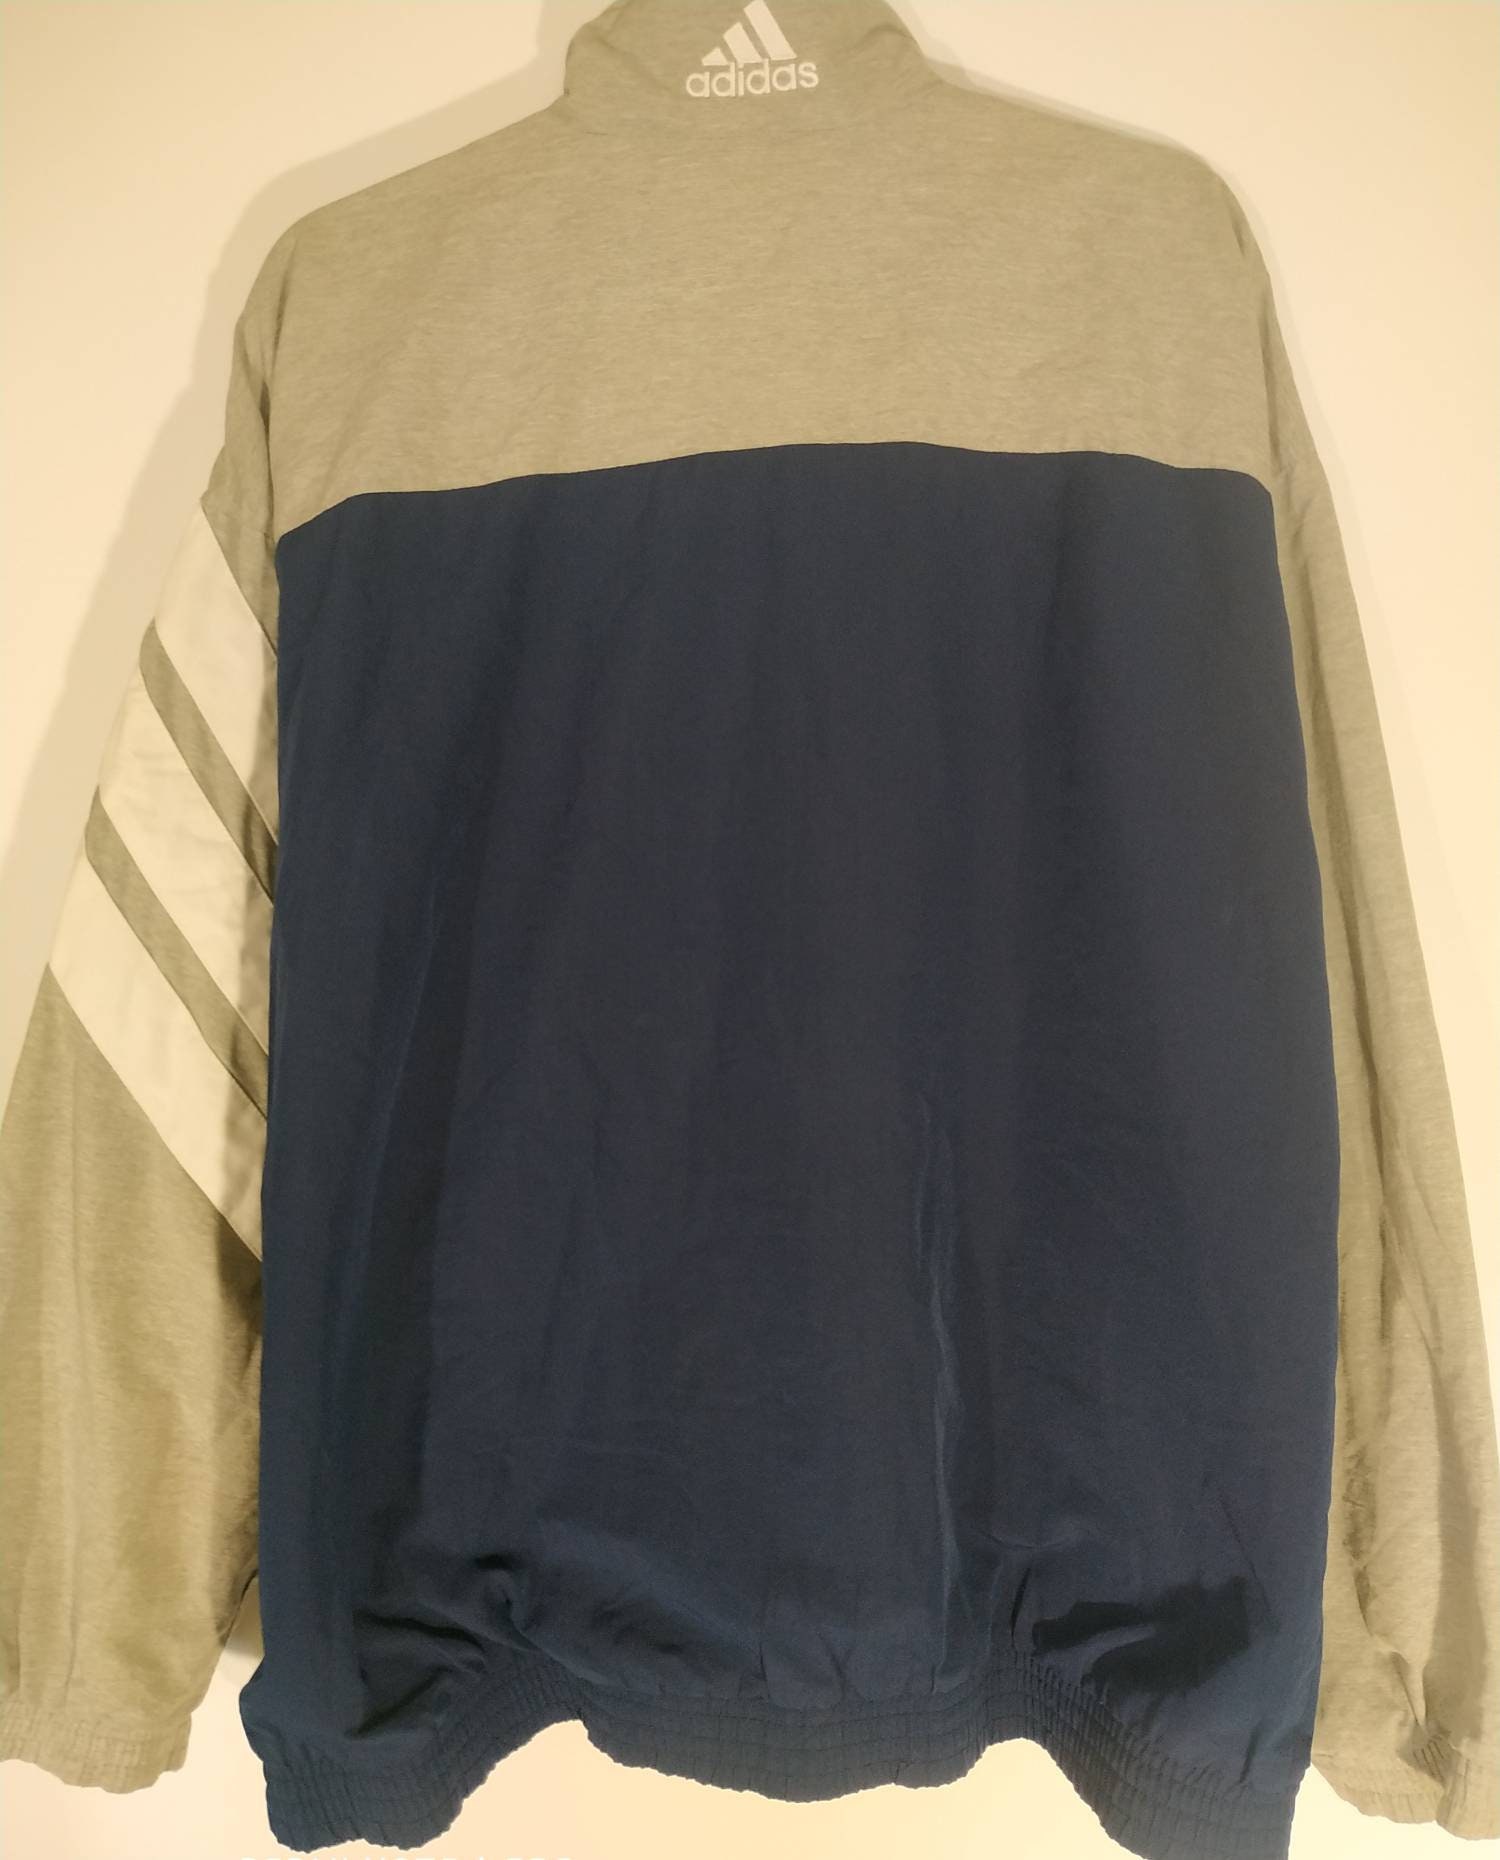 Vintage Adidas jacket white grey blue size xl | Etsy